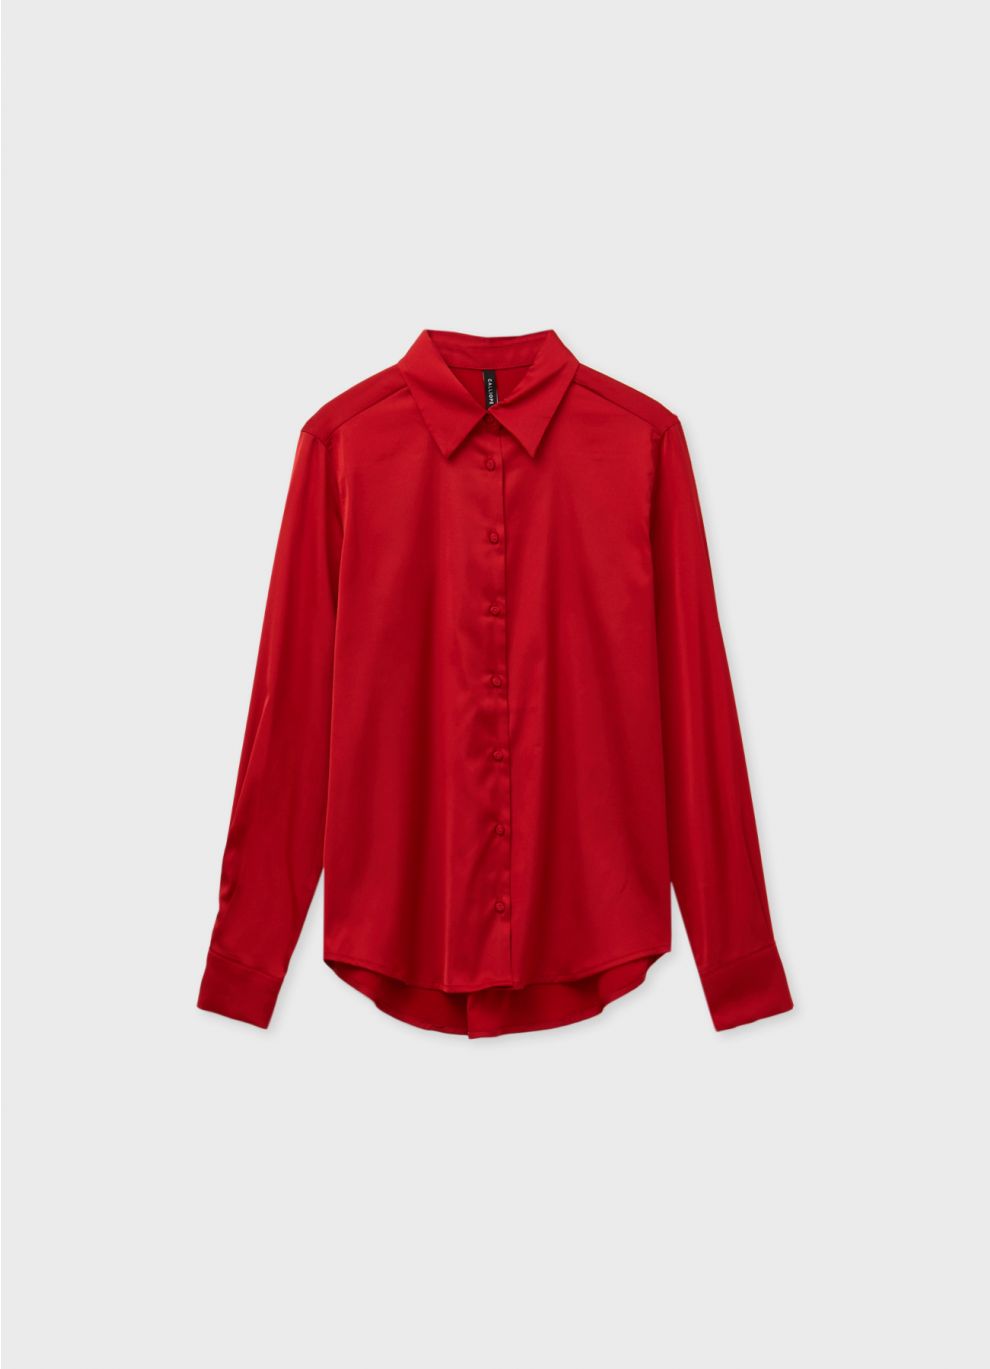 Calliope - shirt Red dark - Acquista Online